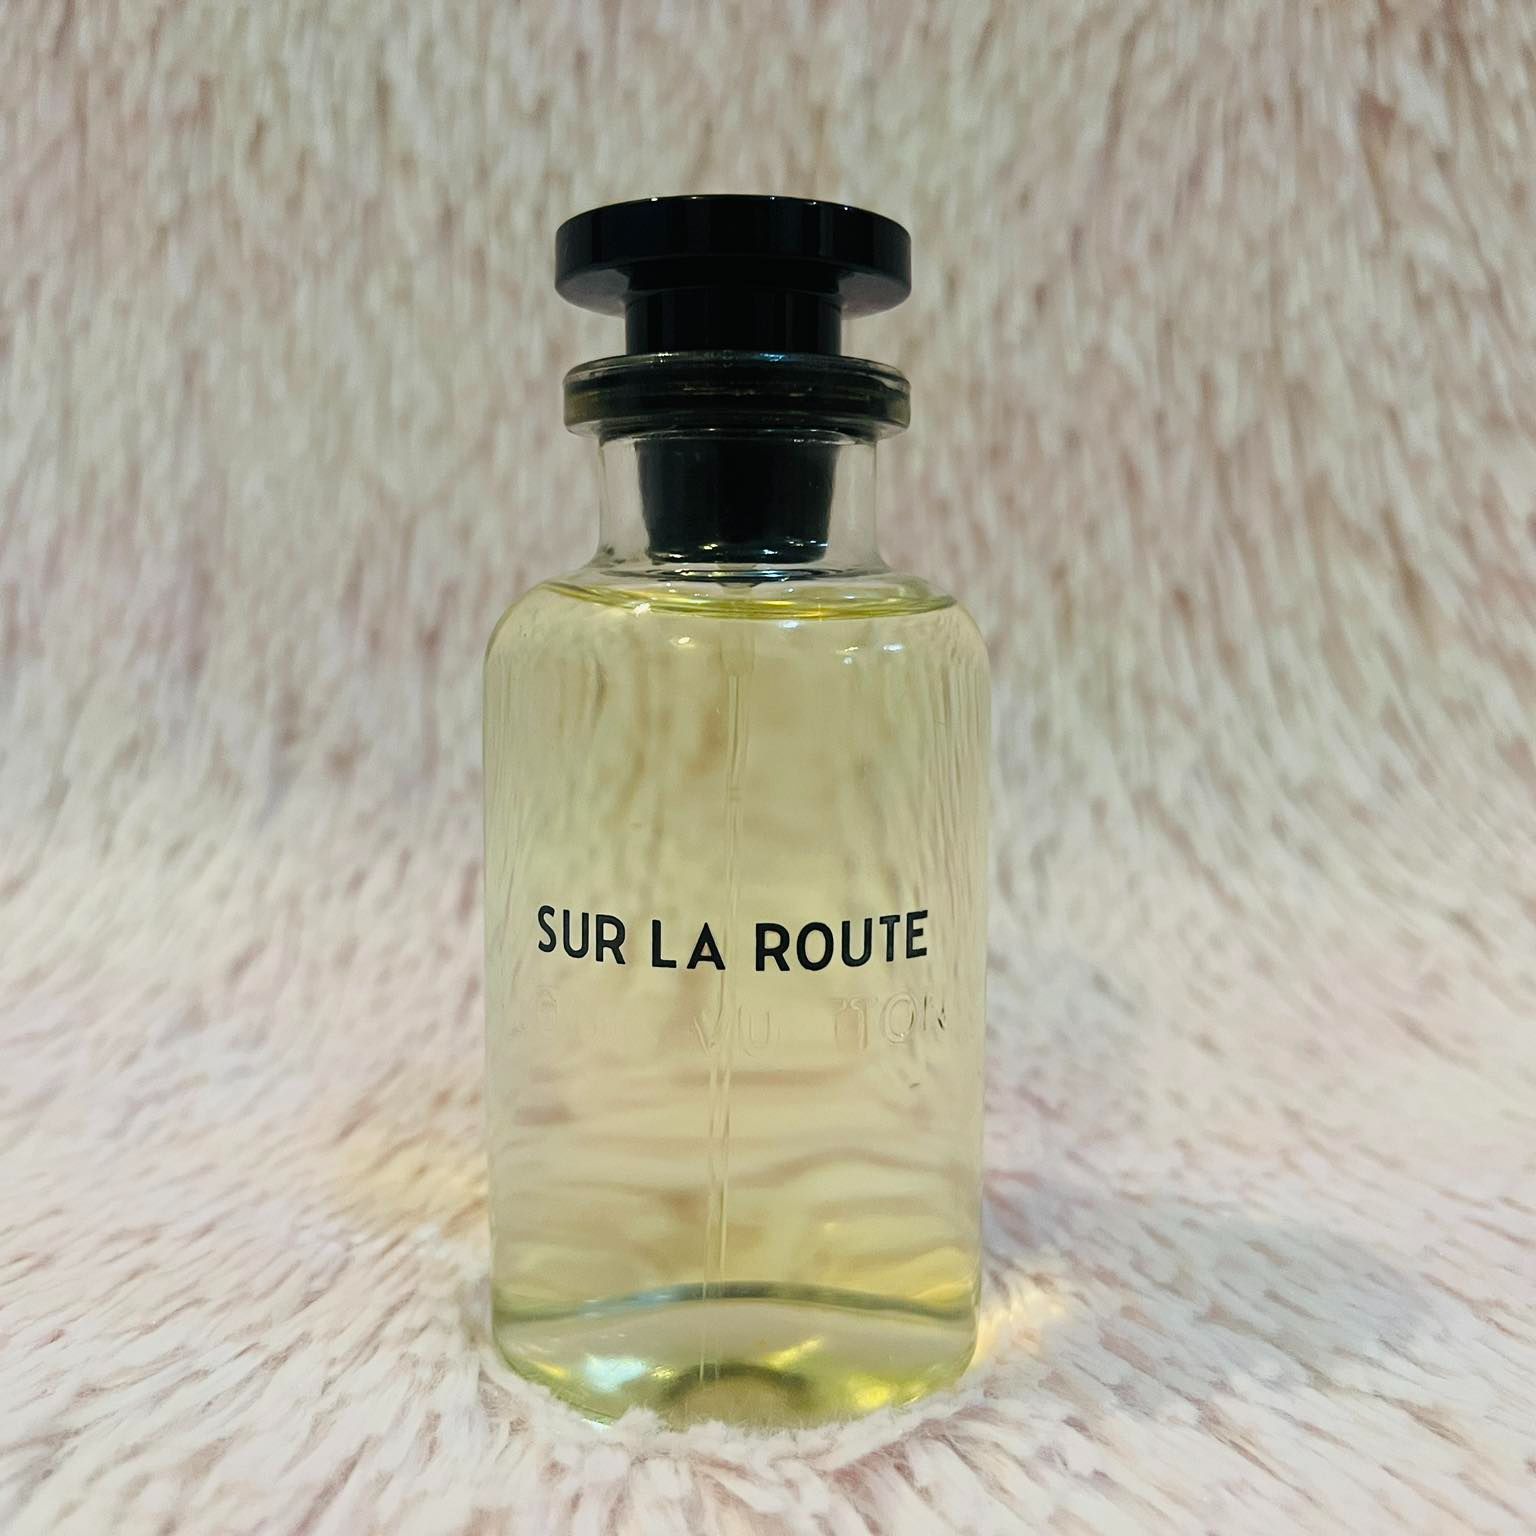 LOUIS VUITTON Sur la Route Fragrance for men